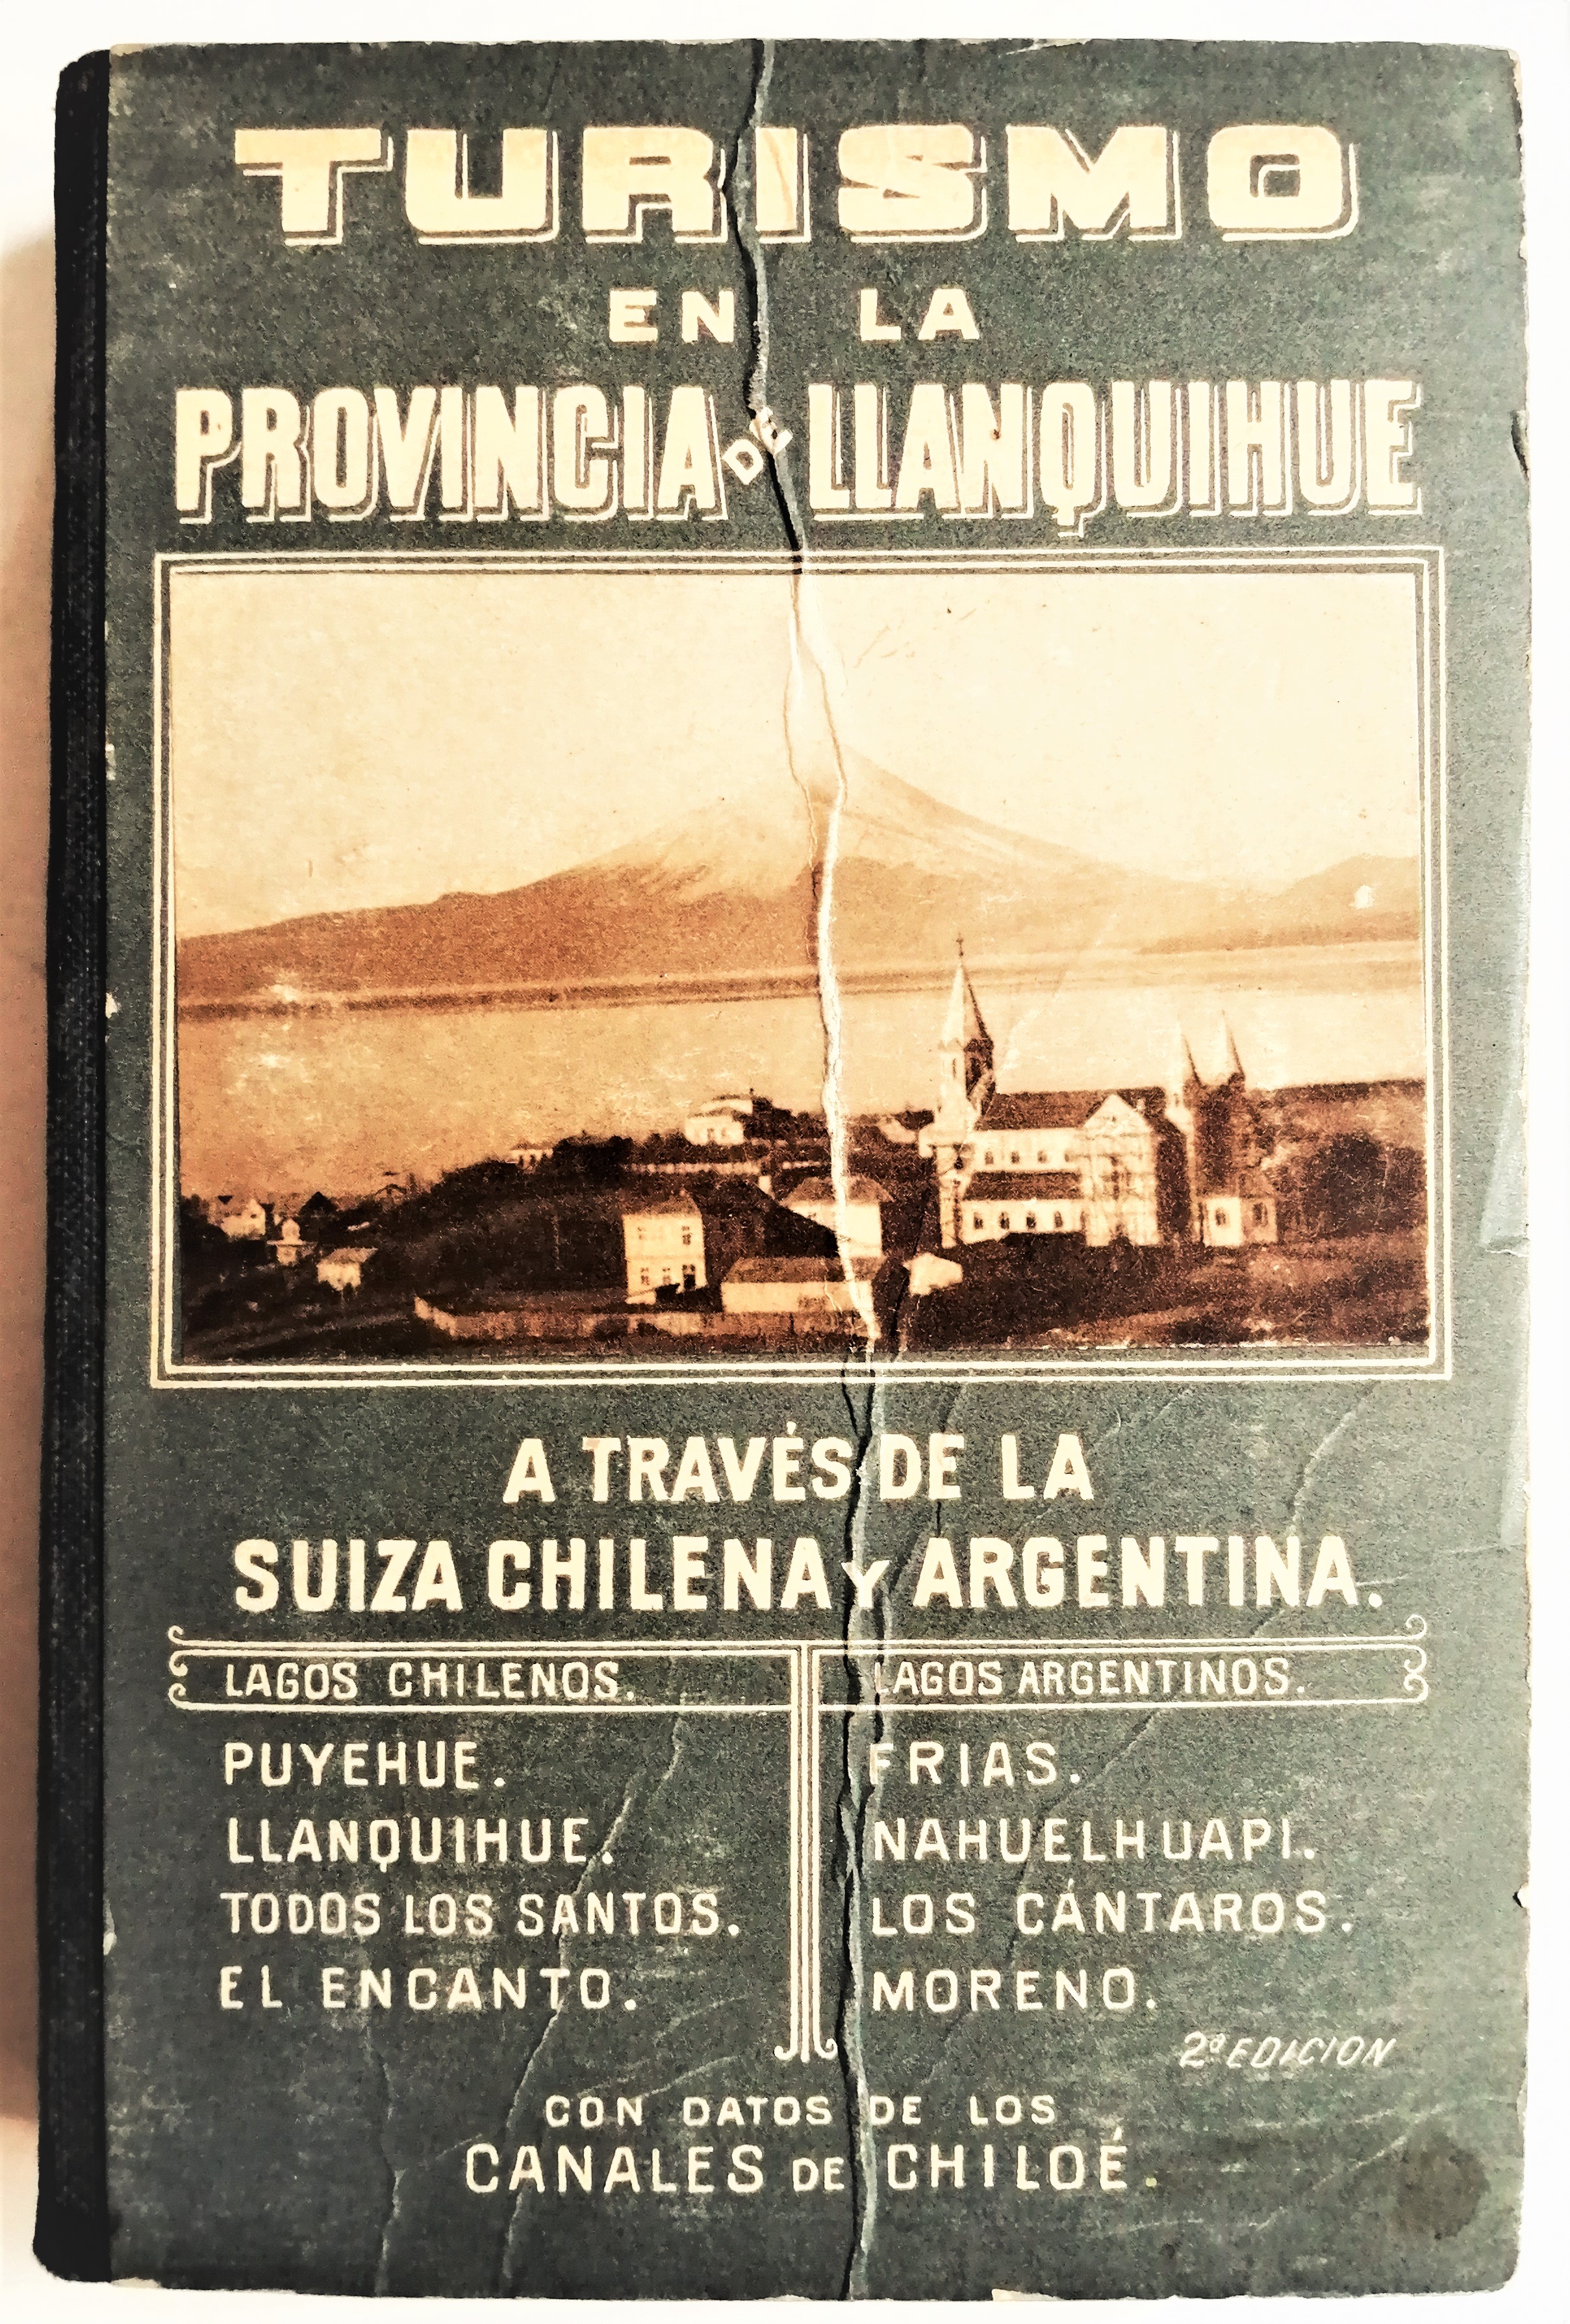 Germán Wiederhold - Turismo en la provincia de Llanquihue a través de la suiza chilena y argentina con datos de los canales de Chiloé